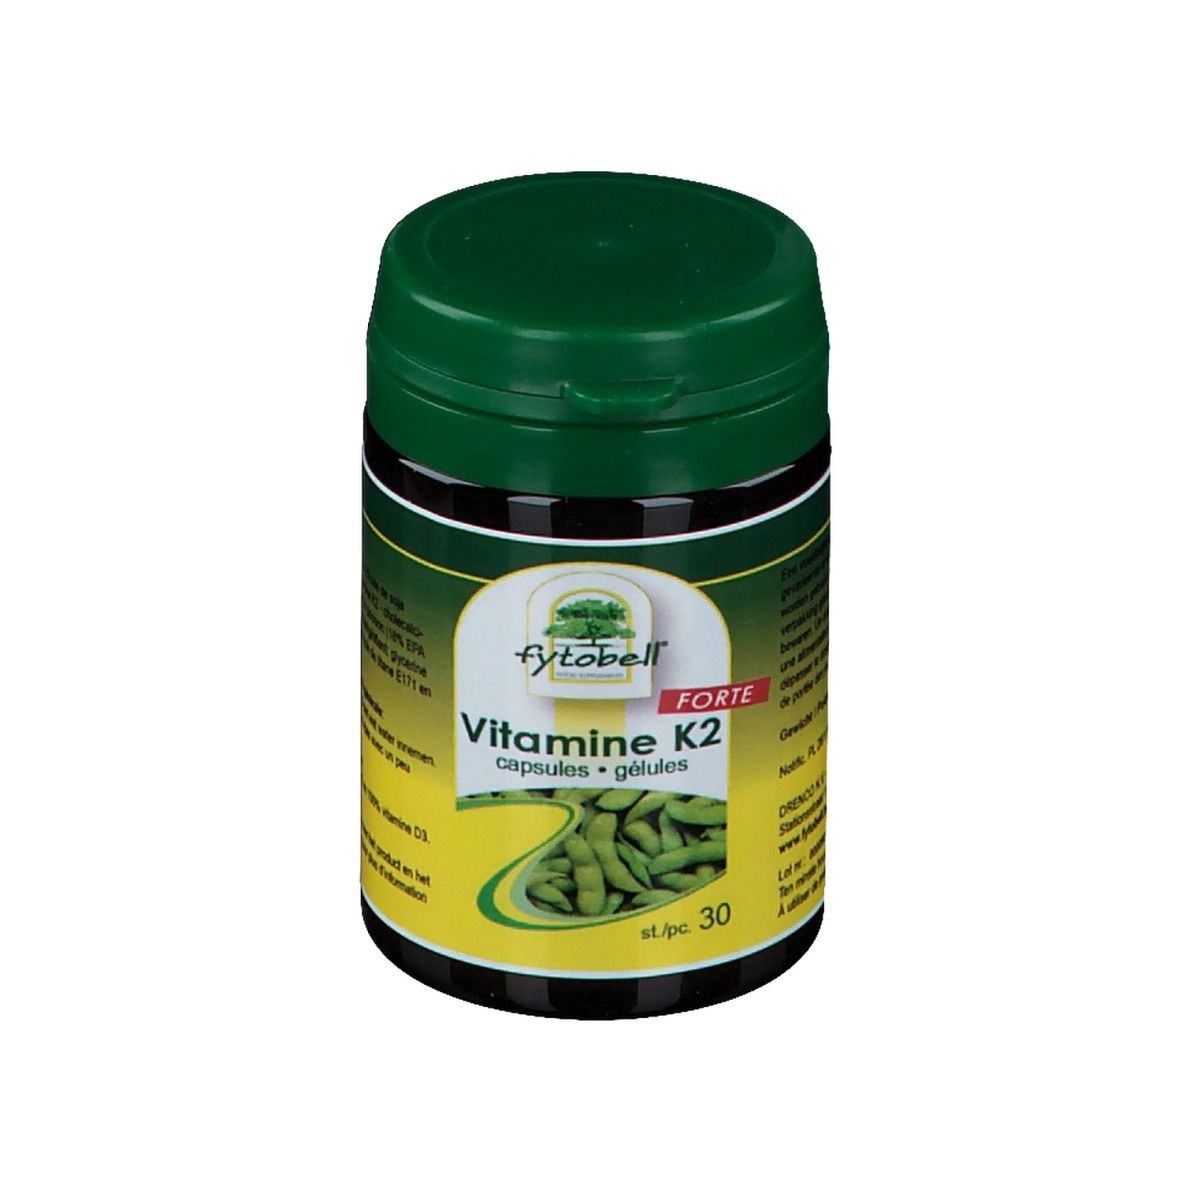 Image of fytobell® Vitamin K2 FORTE